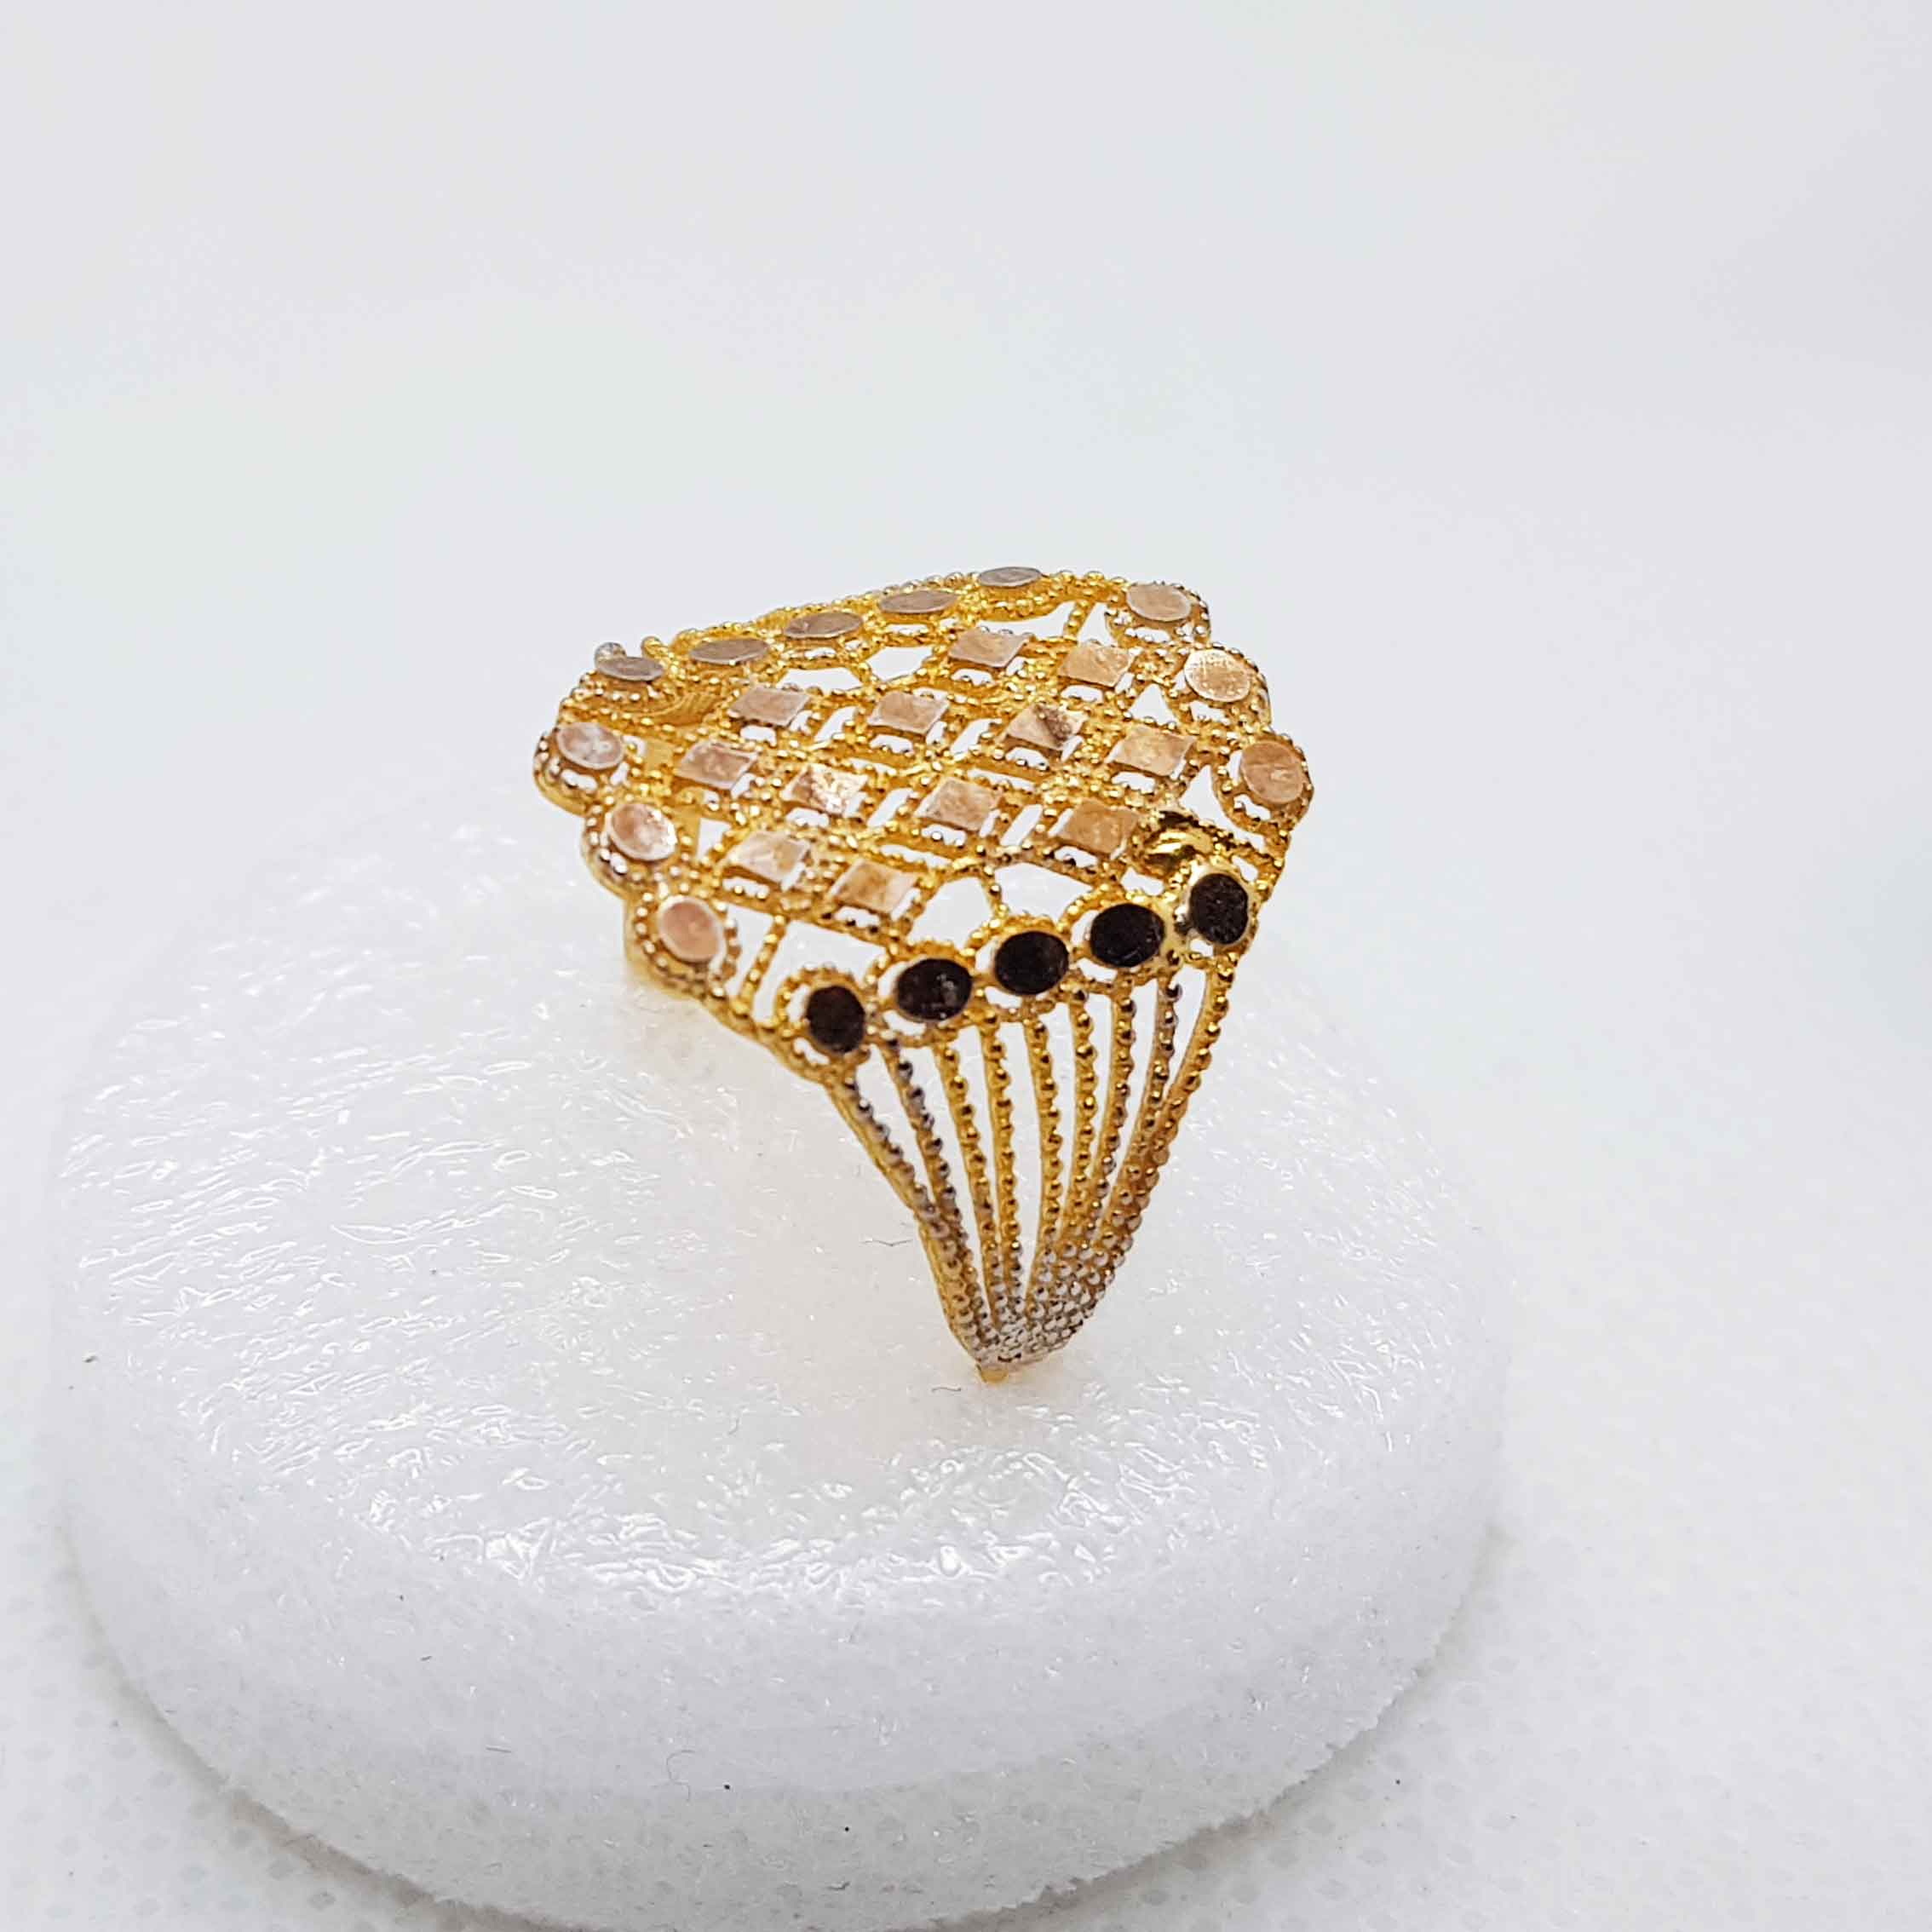 Stylish Gold Ring Without Stone